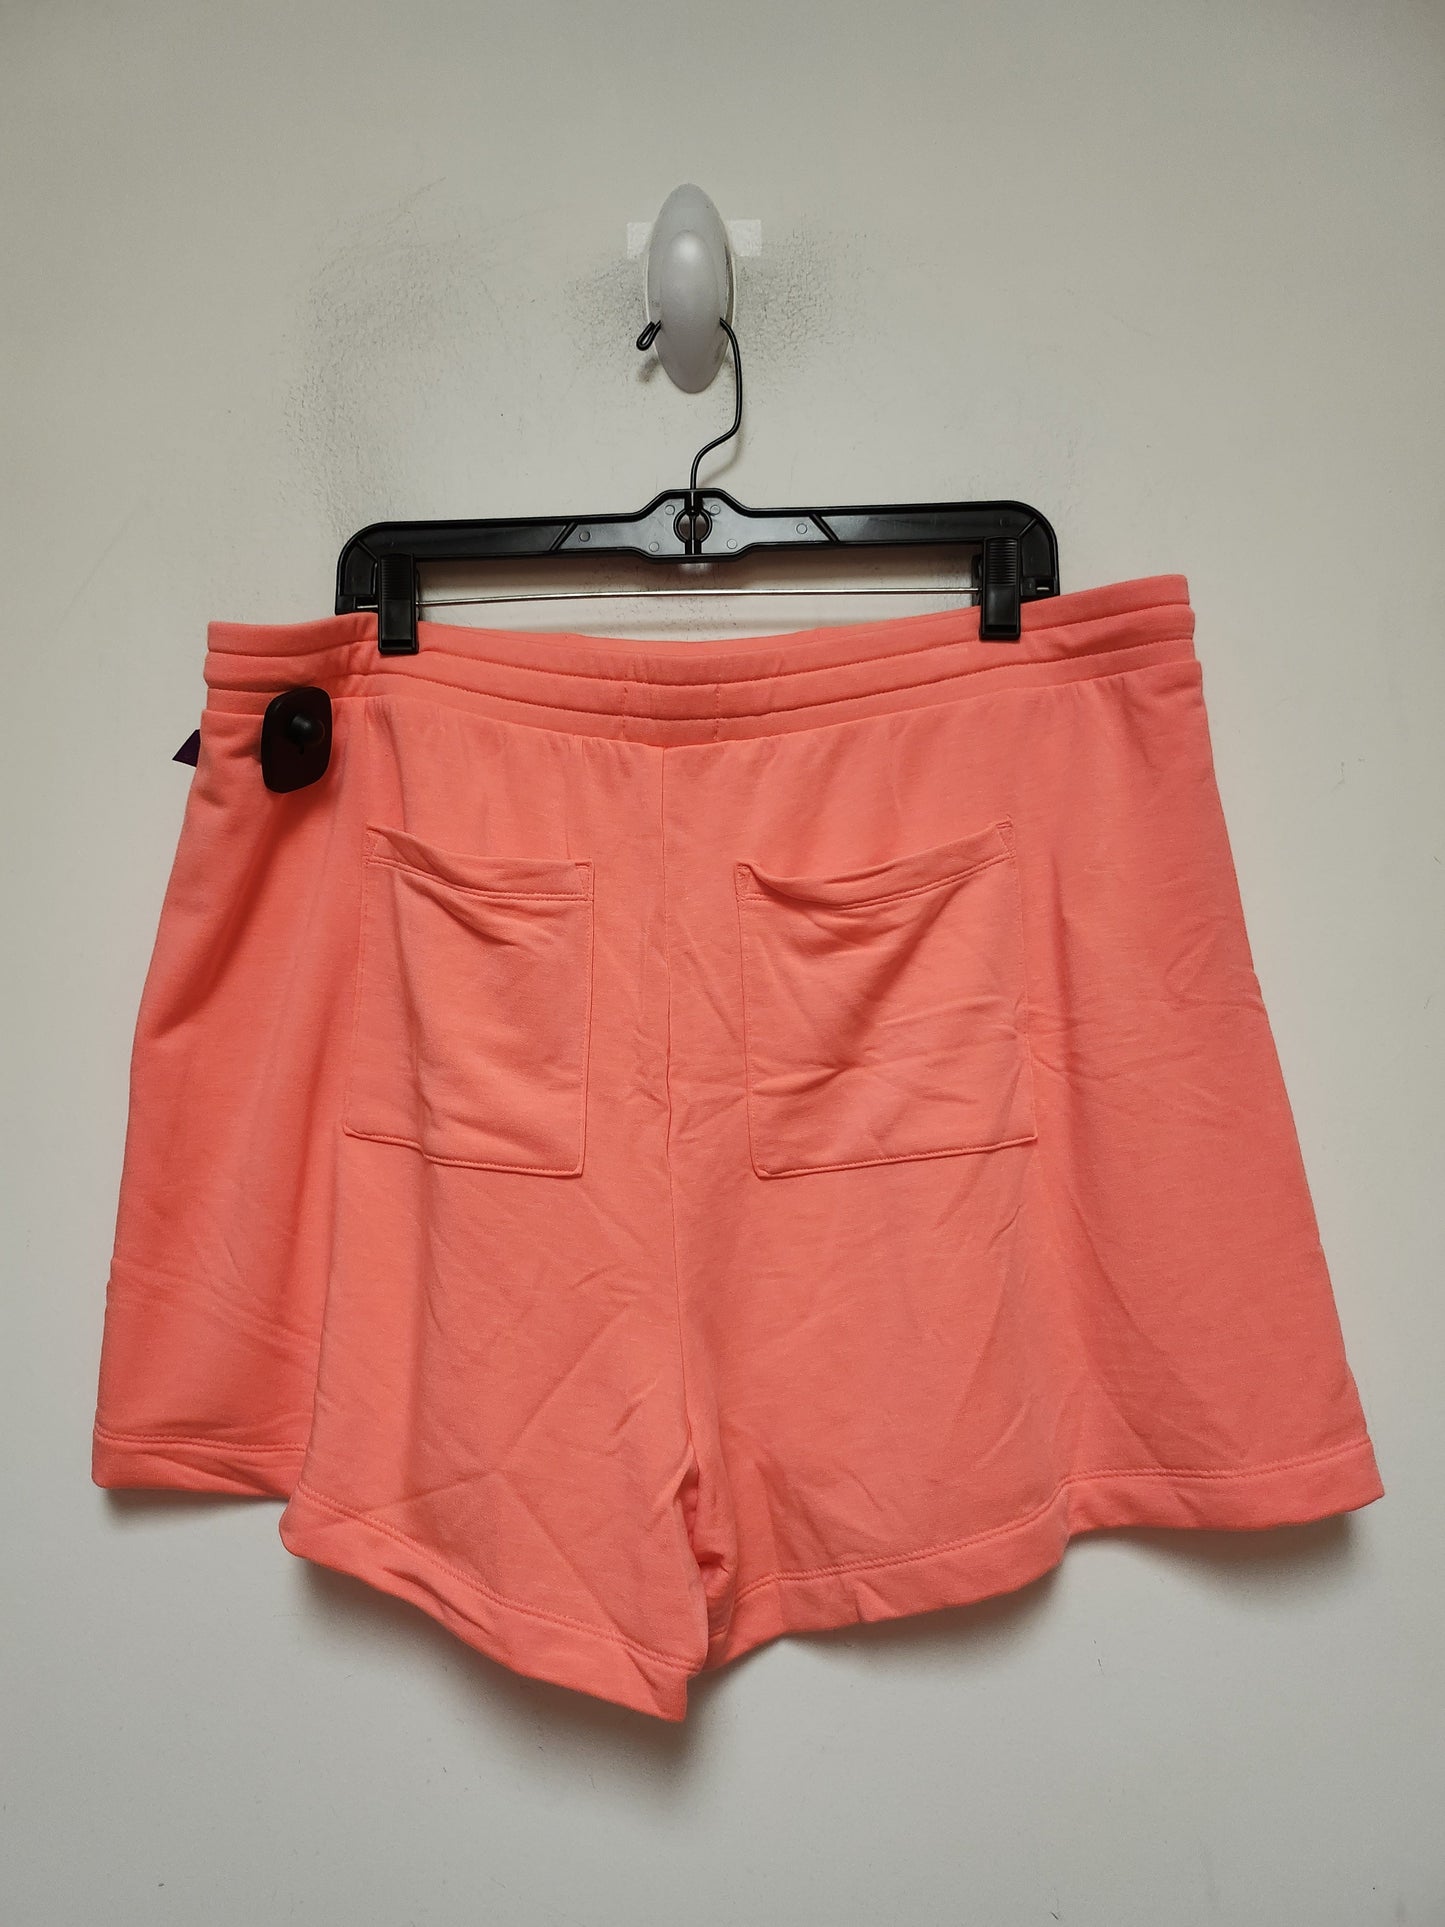 Orange Athletic Shorts Lou And Grey, Size Xl